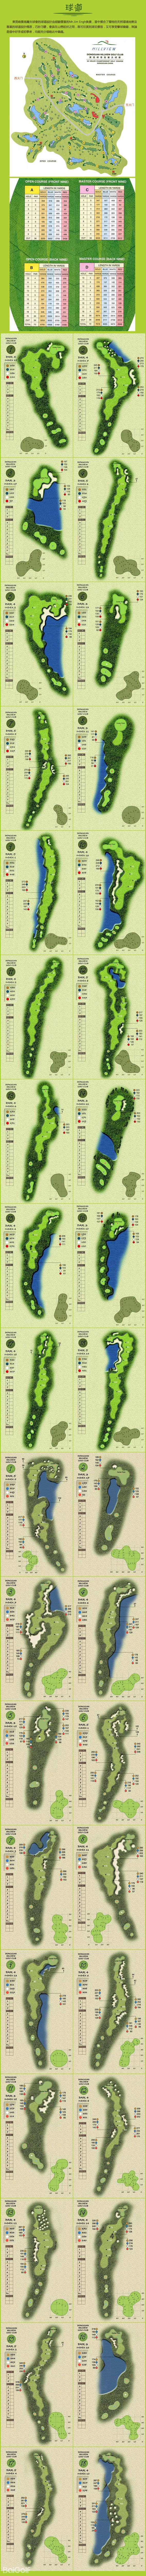 東莞峰會高爾夫球場球道圖